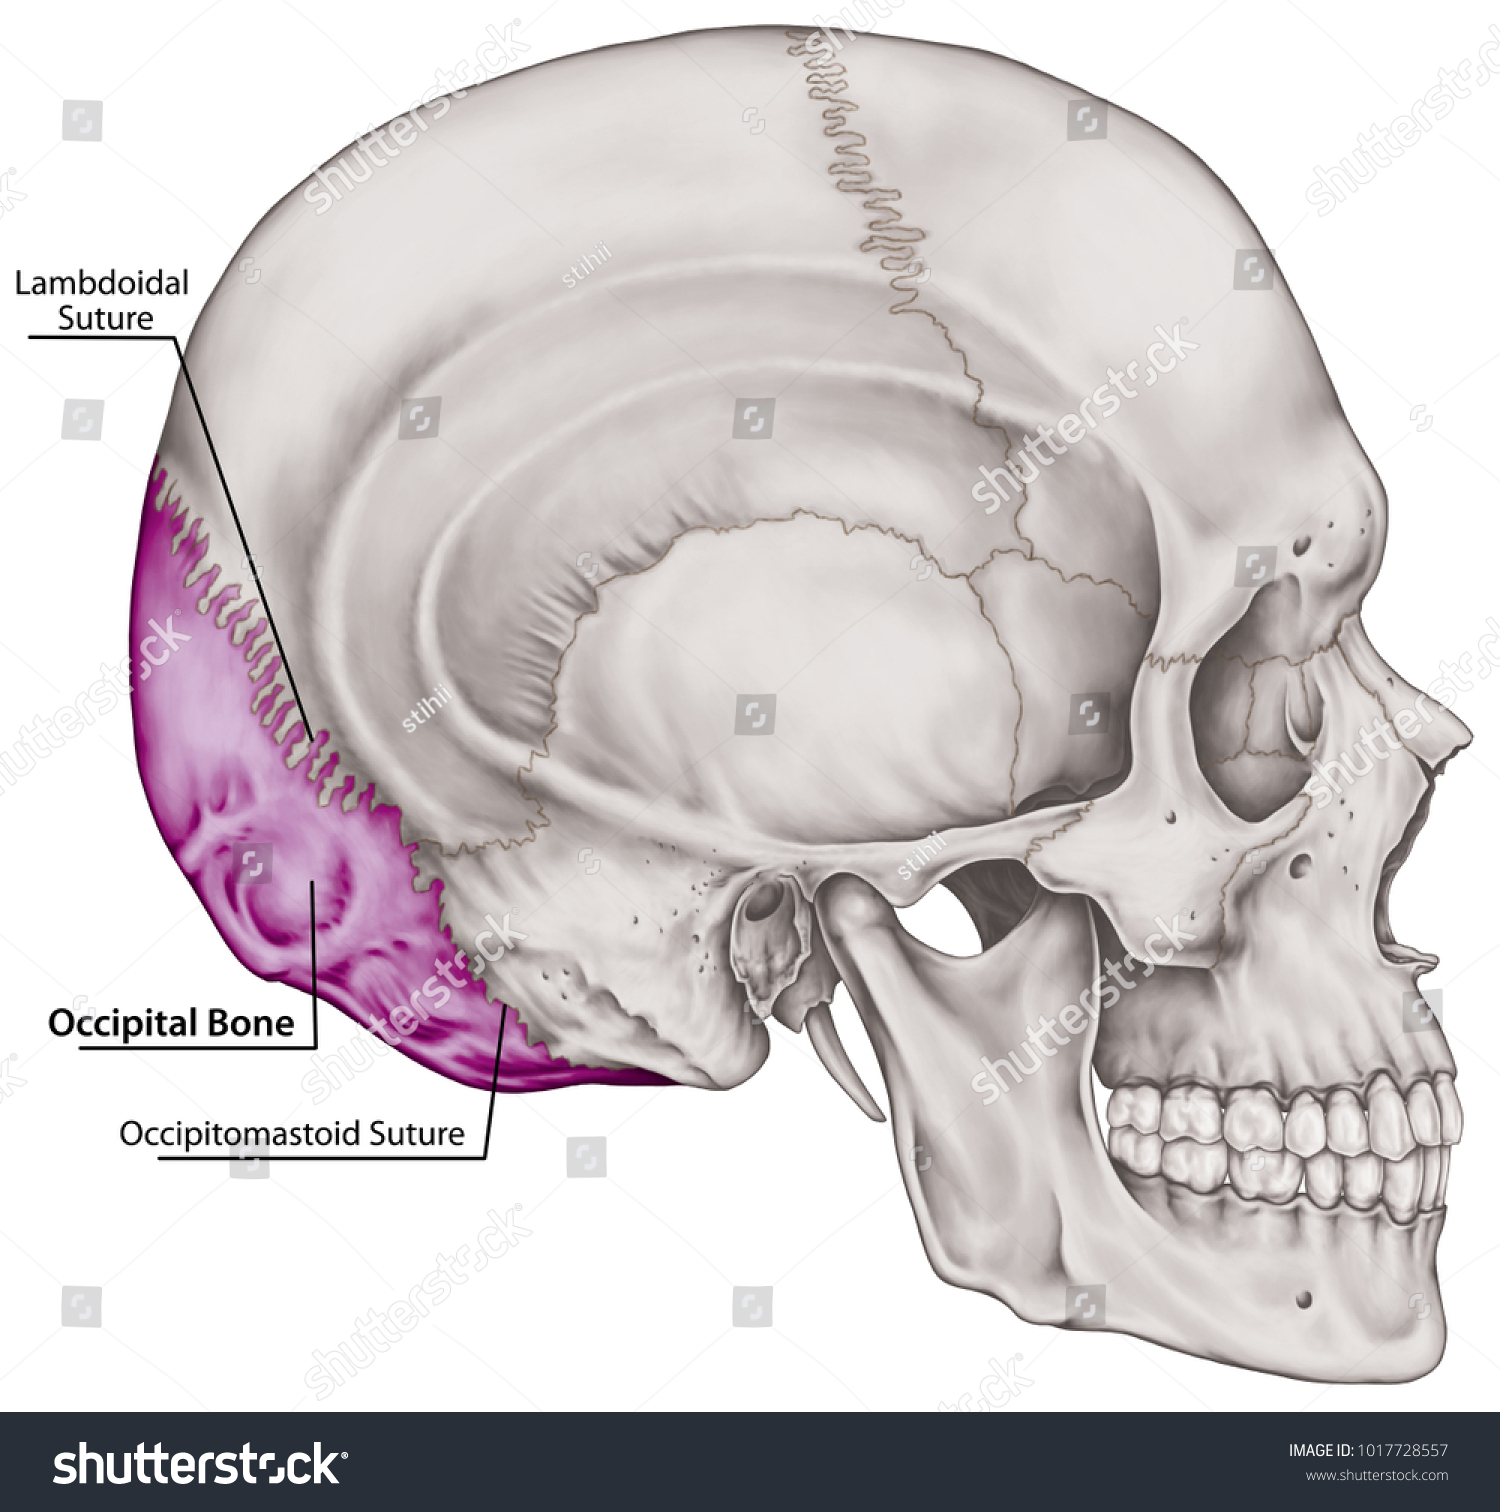 Occipital Bone Cranium Bones Head Skull Stock Illustration 1017728557 Shutterstock 9751